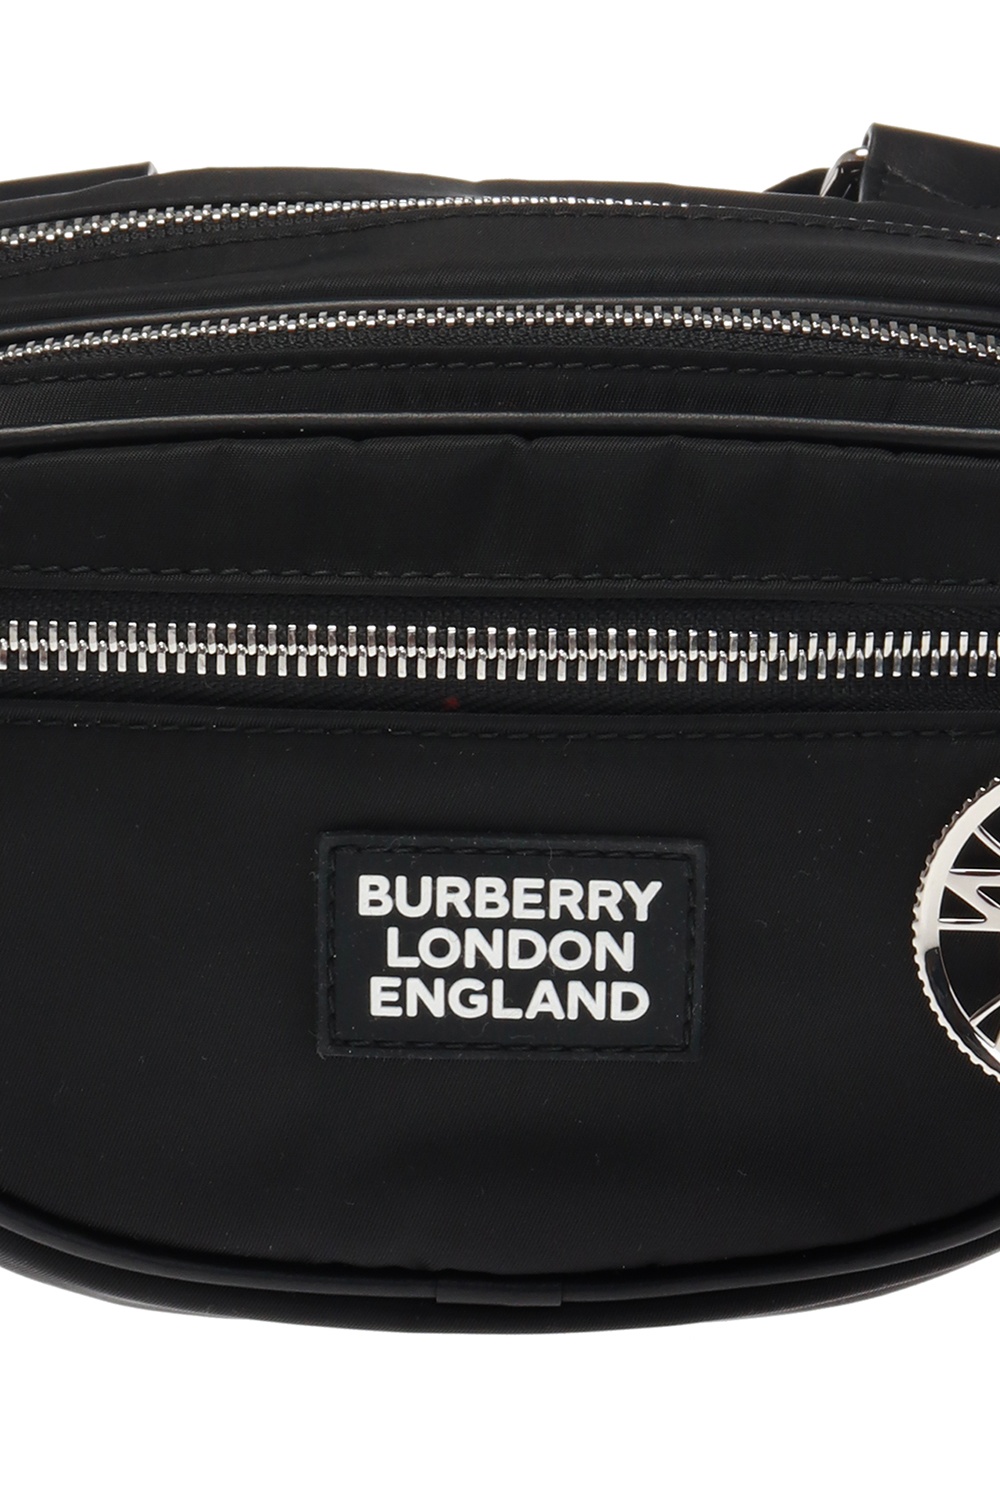 Burberry Cannon Belt Bag Vintage Check Large Beige